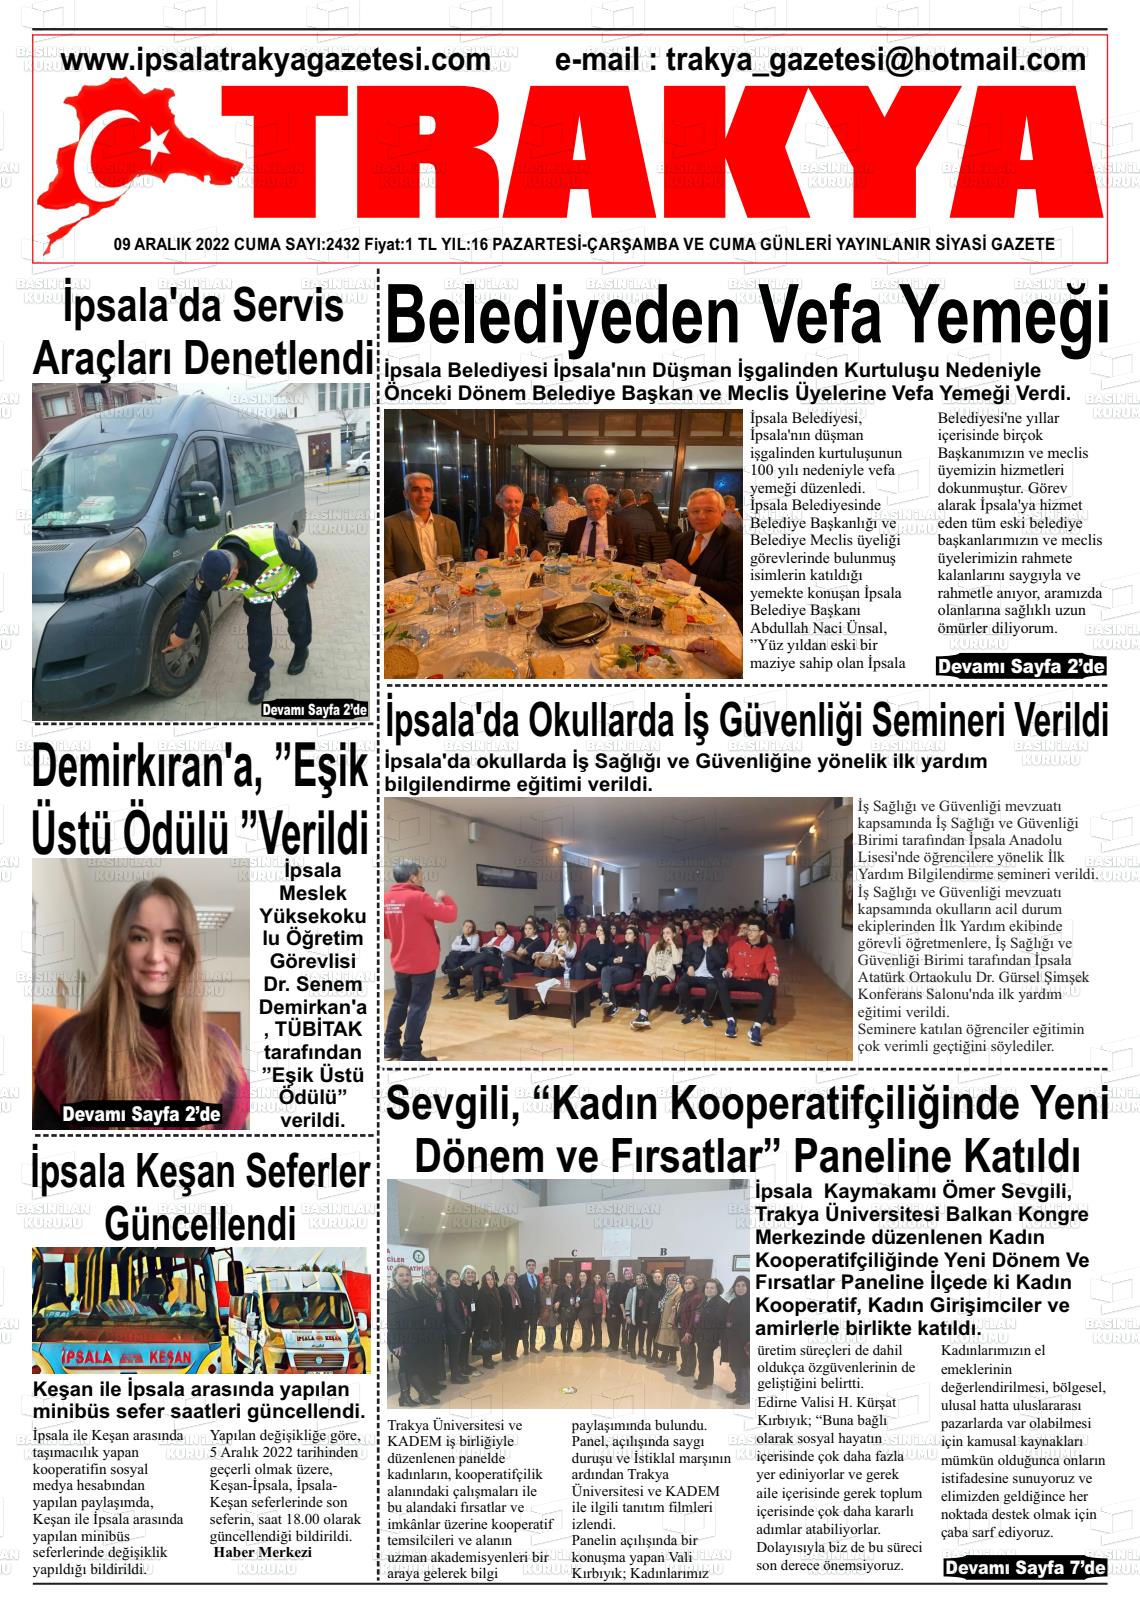 09 Aralık 2022 Trakya Gazete Manşeti